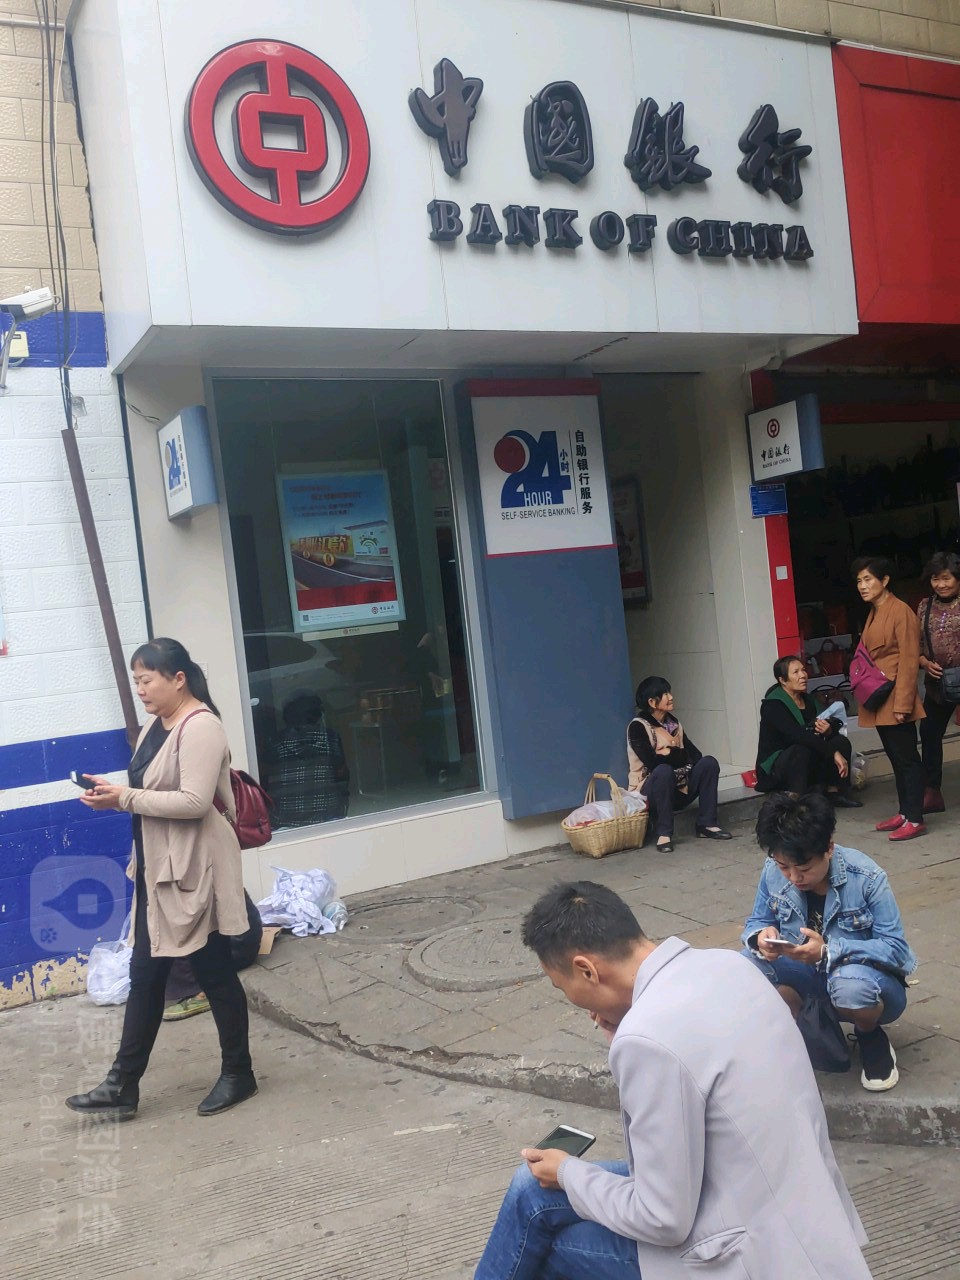 中國銀行24小時自助銀行(西大街店)